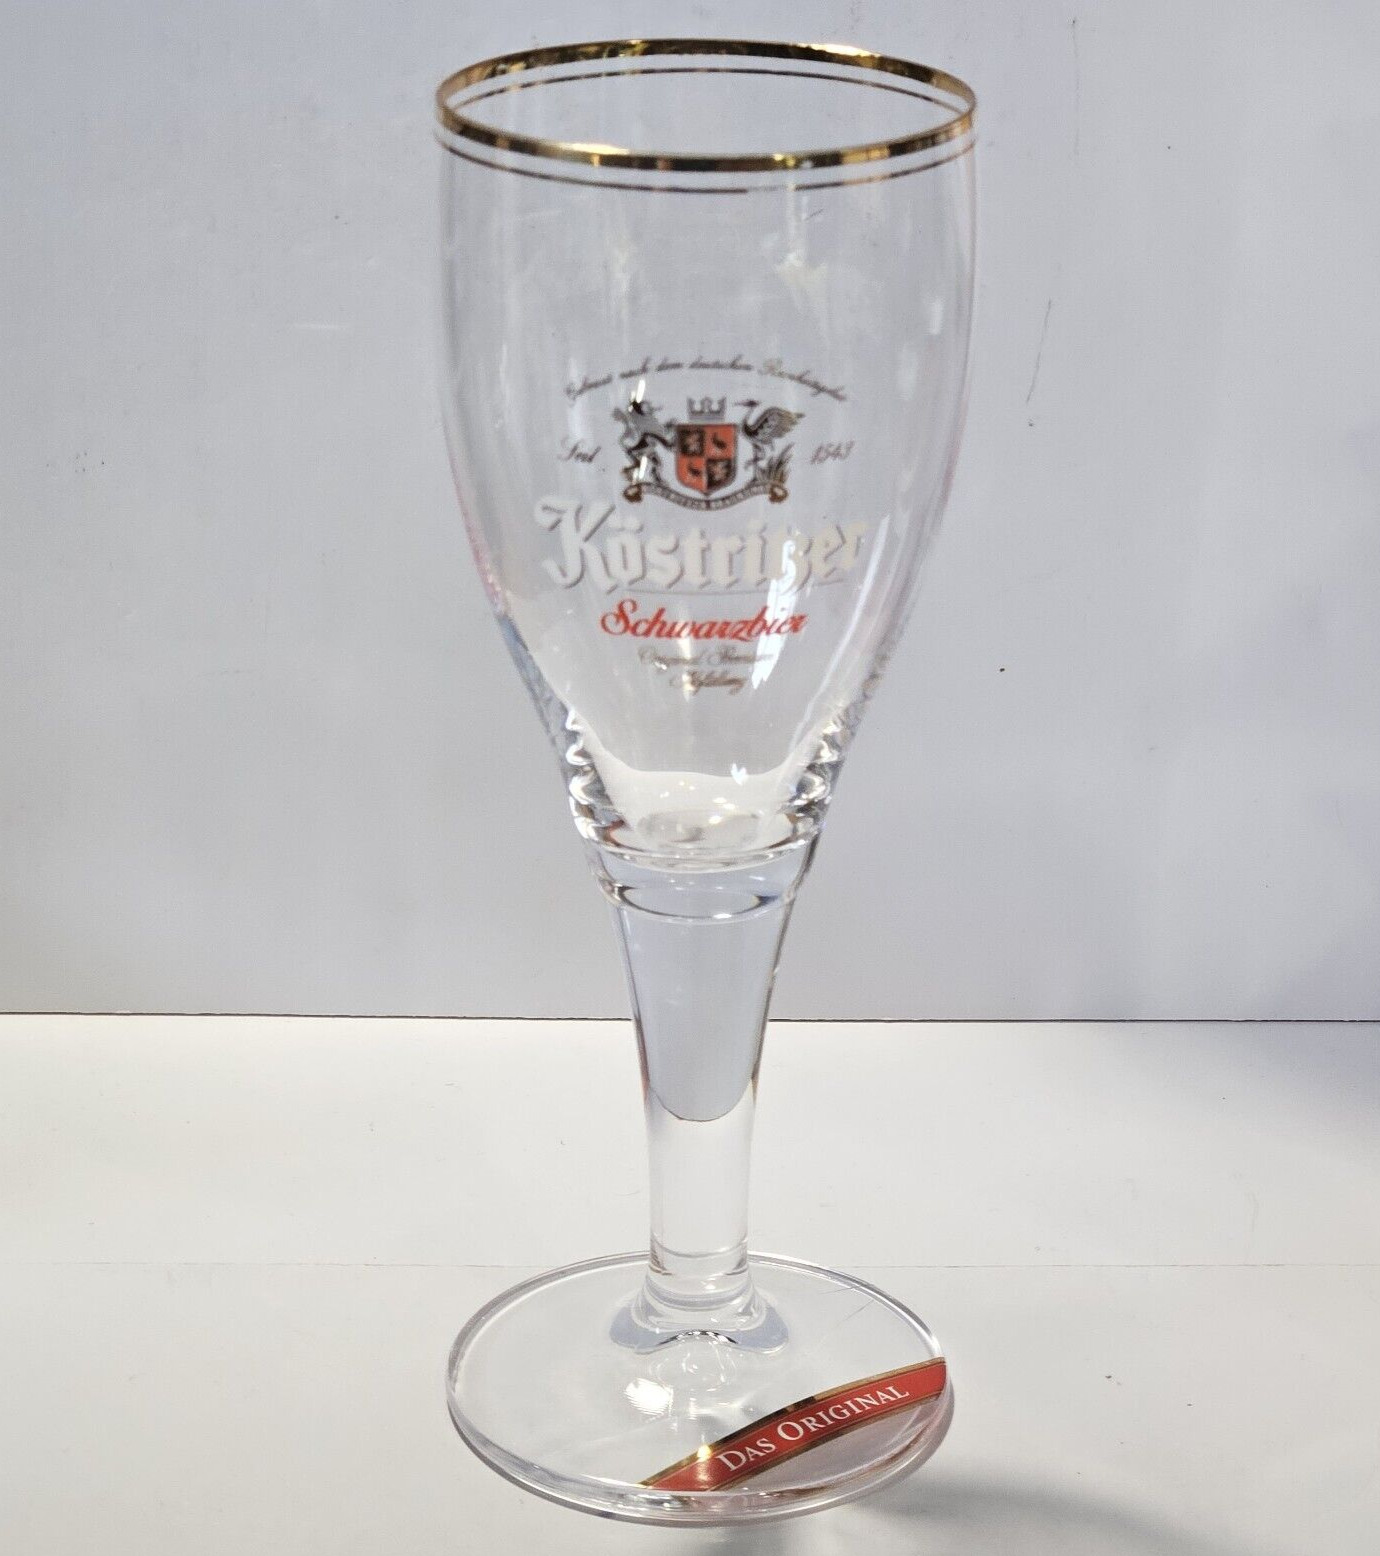 Kostritzer Schwarzbier Das Original Gold Rim Beer Glass .3 Liter 8 7/8\